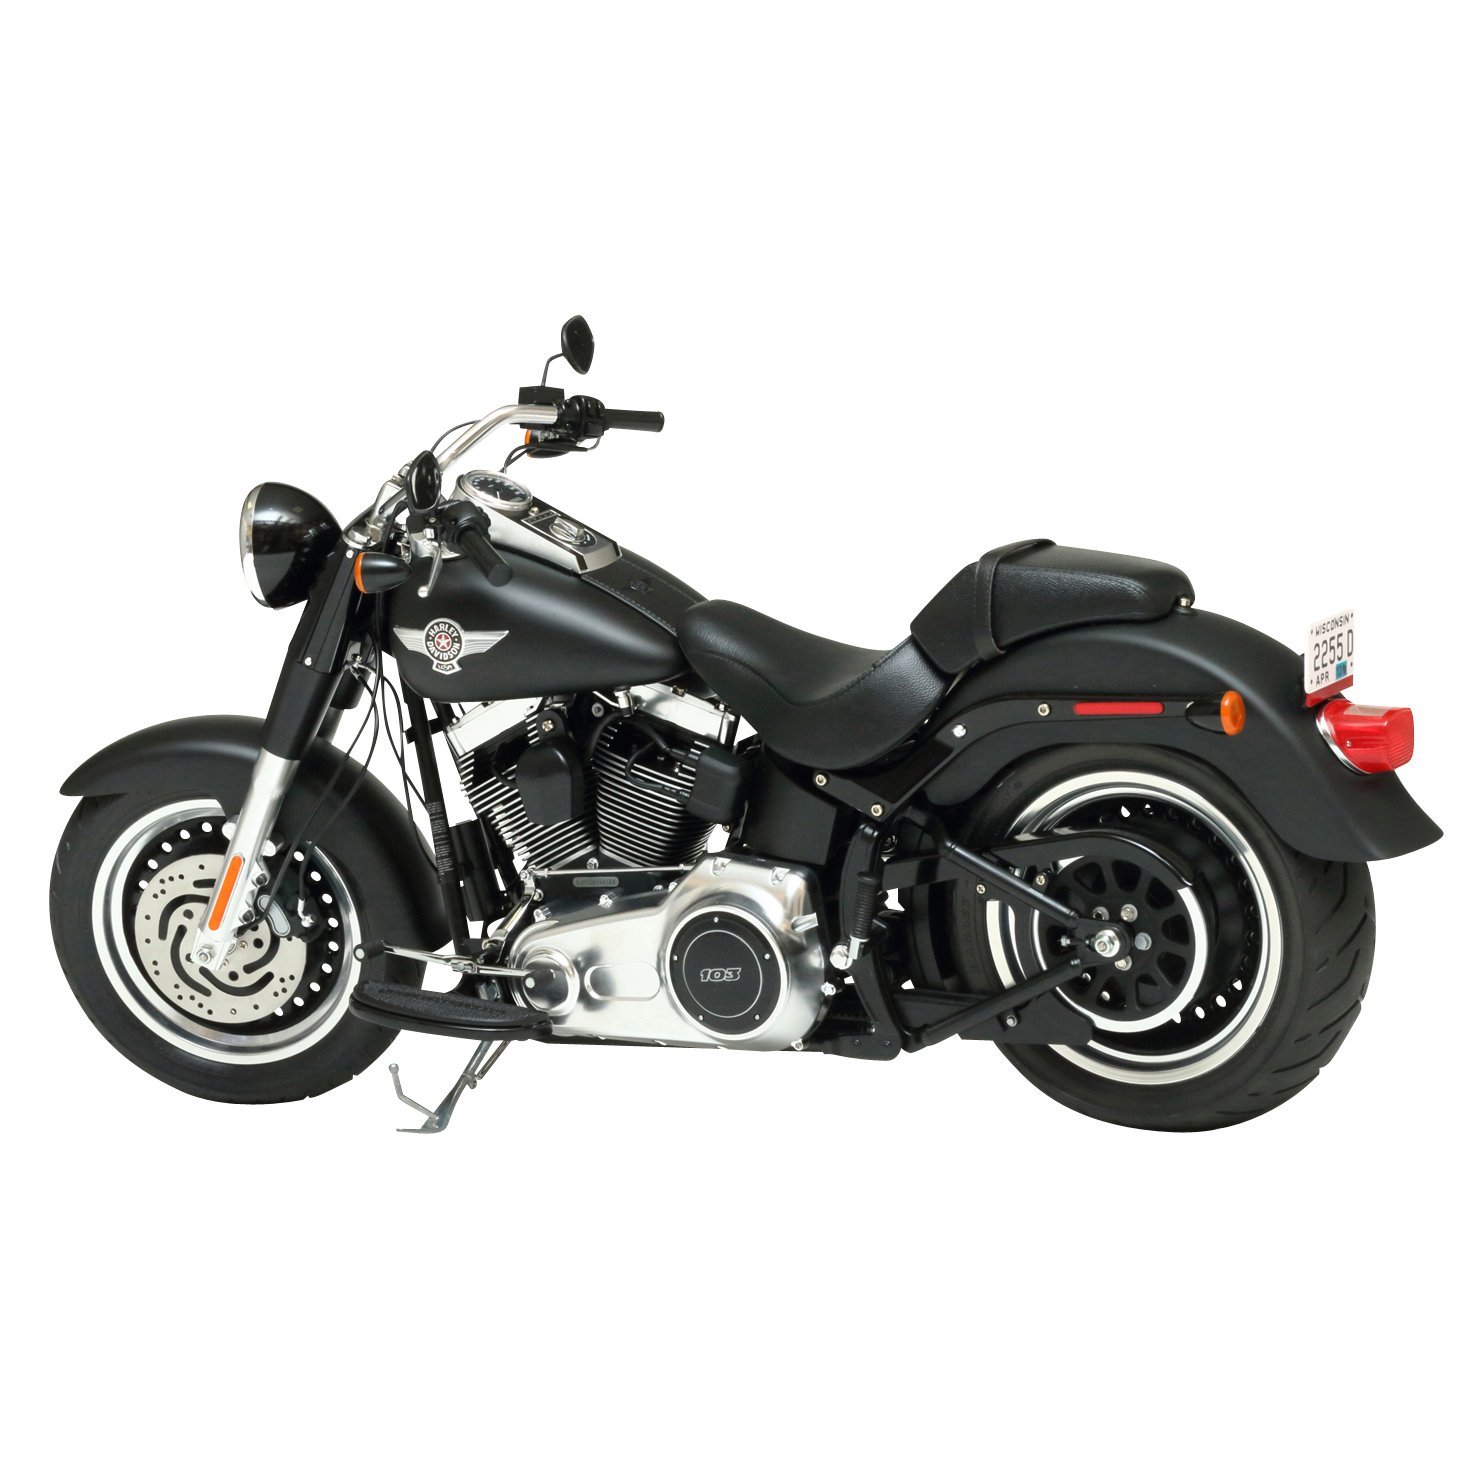 Сборная модель мотоцикла Harley-Davidson FLSTFB - Fat Boy Lo (ограниченная серия) L=400мм, масштаб 1:6, производитель Tamyia, артикул: 16041 # 3 hobbyplus.ru